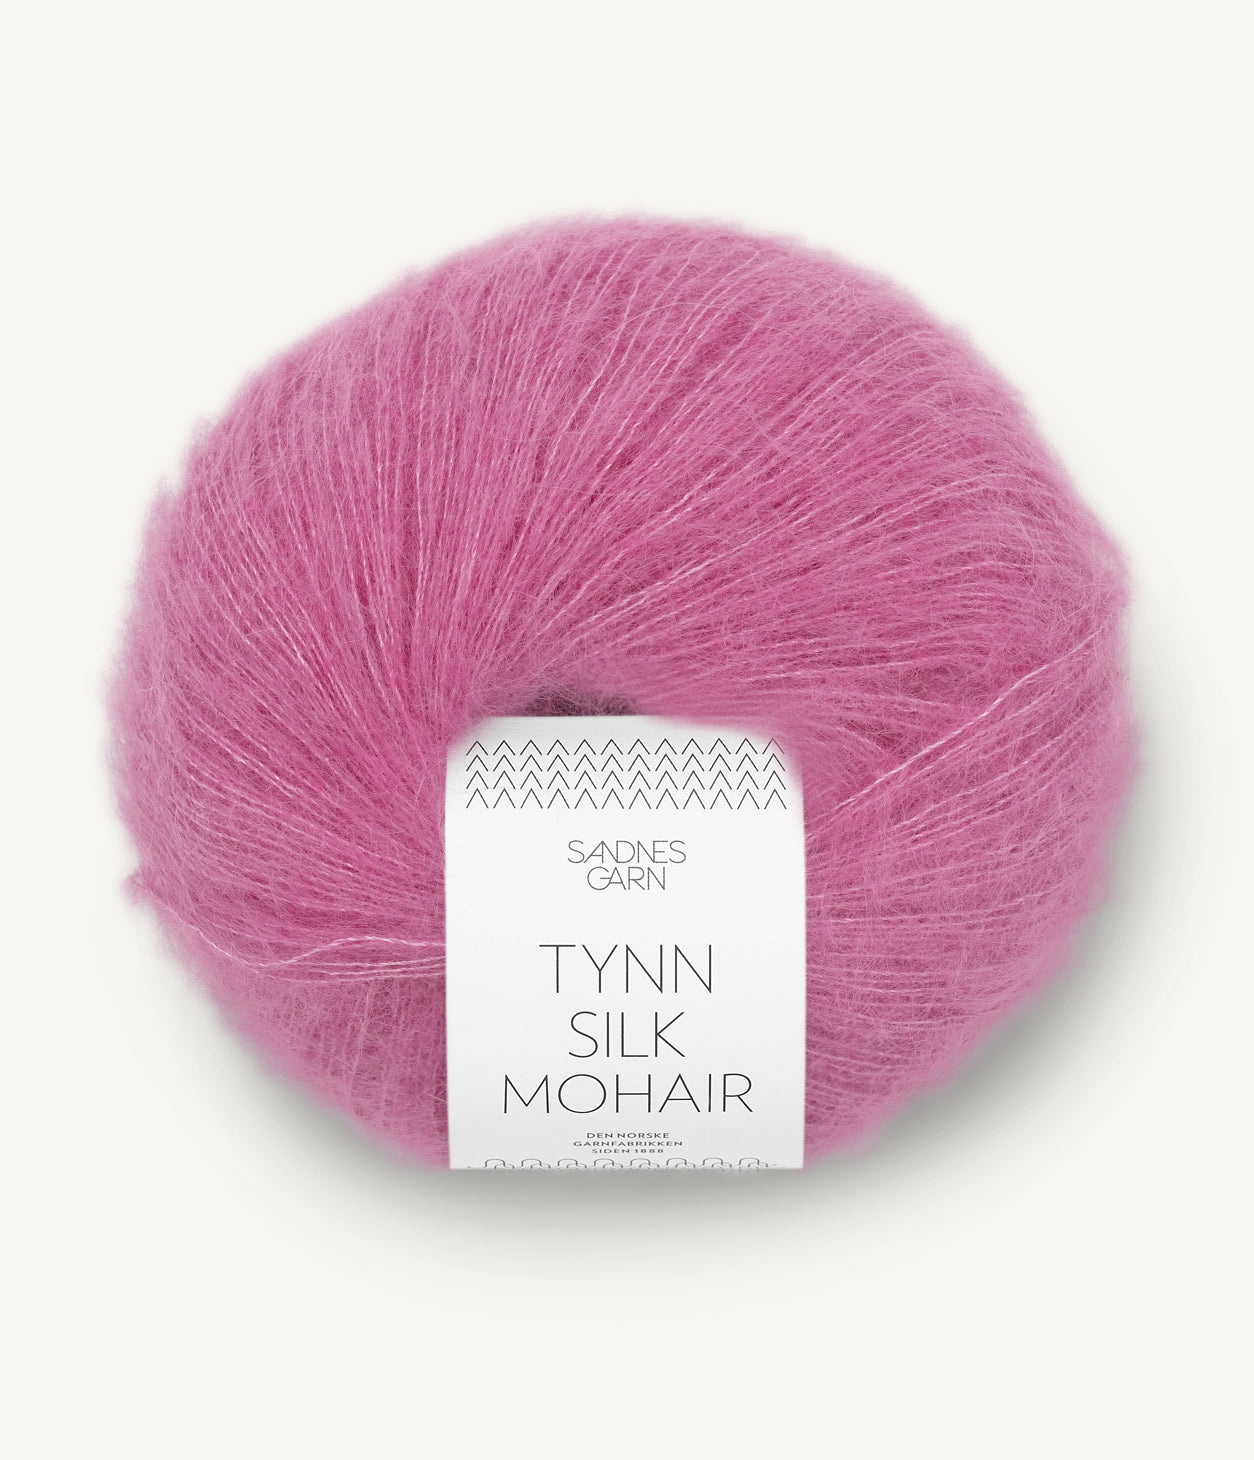 4626 Shocking Pink Tynn Silk Mohair Sandnes Garn